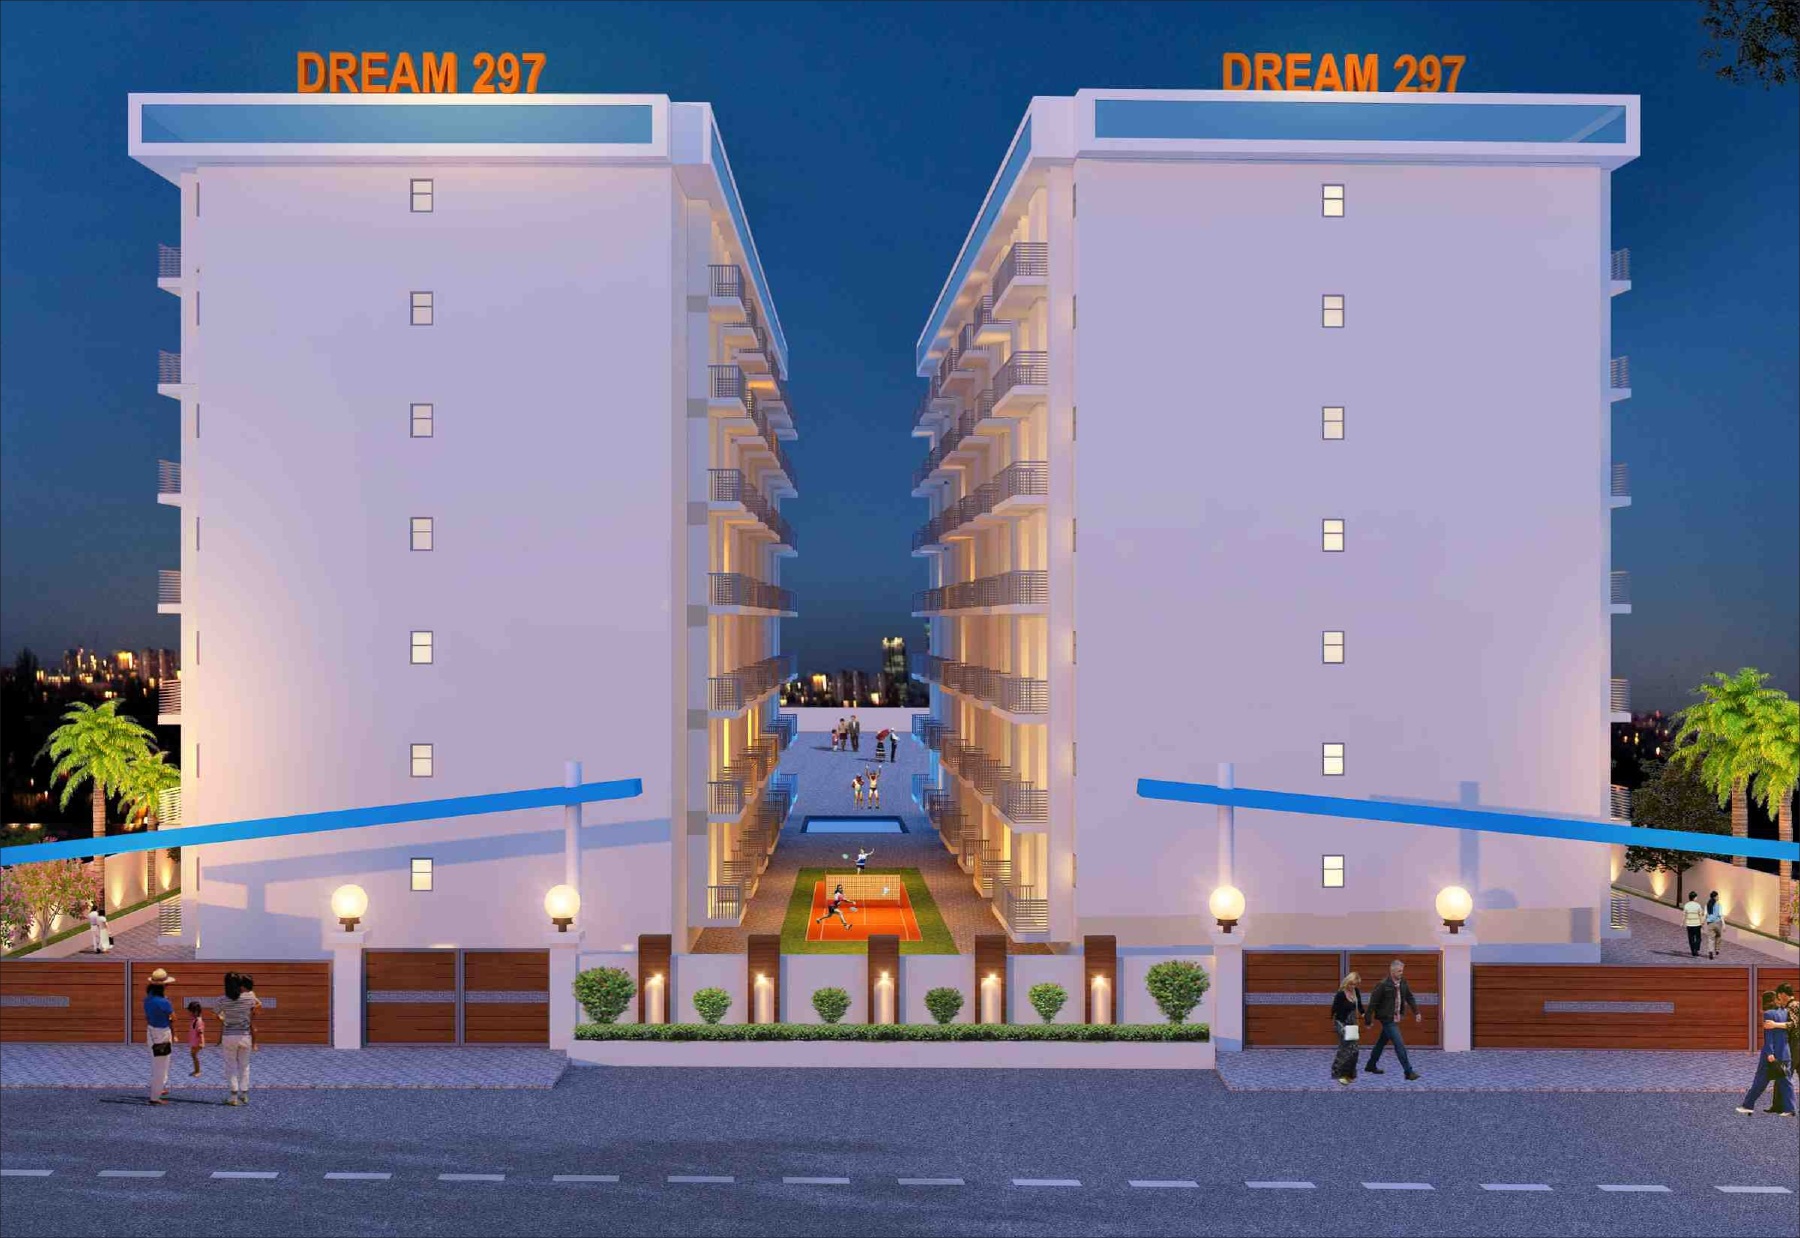 Dream 297